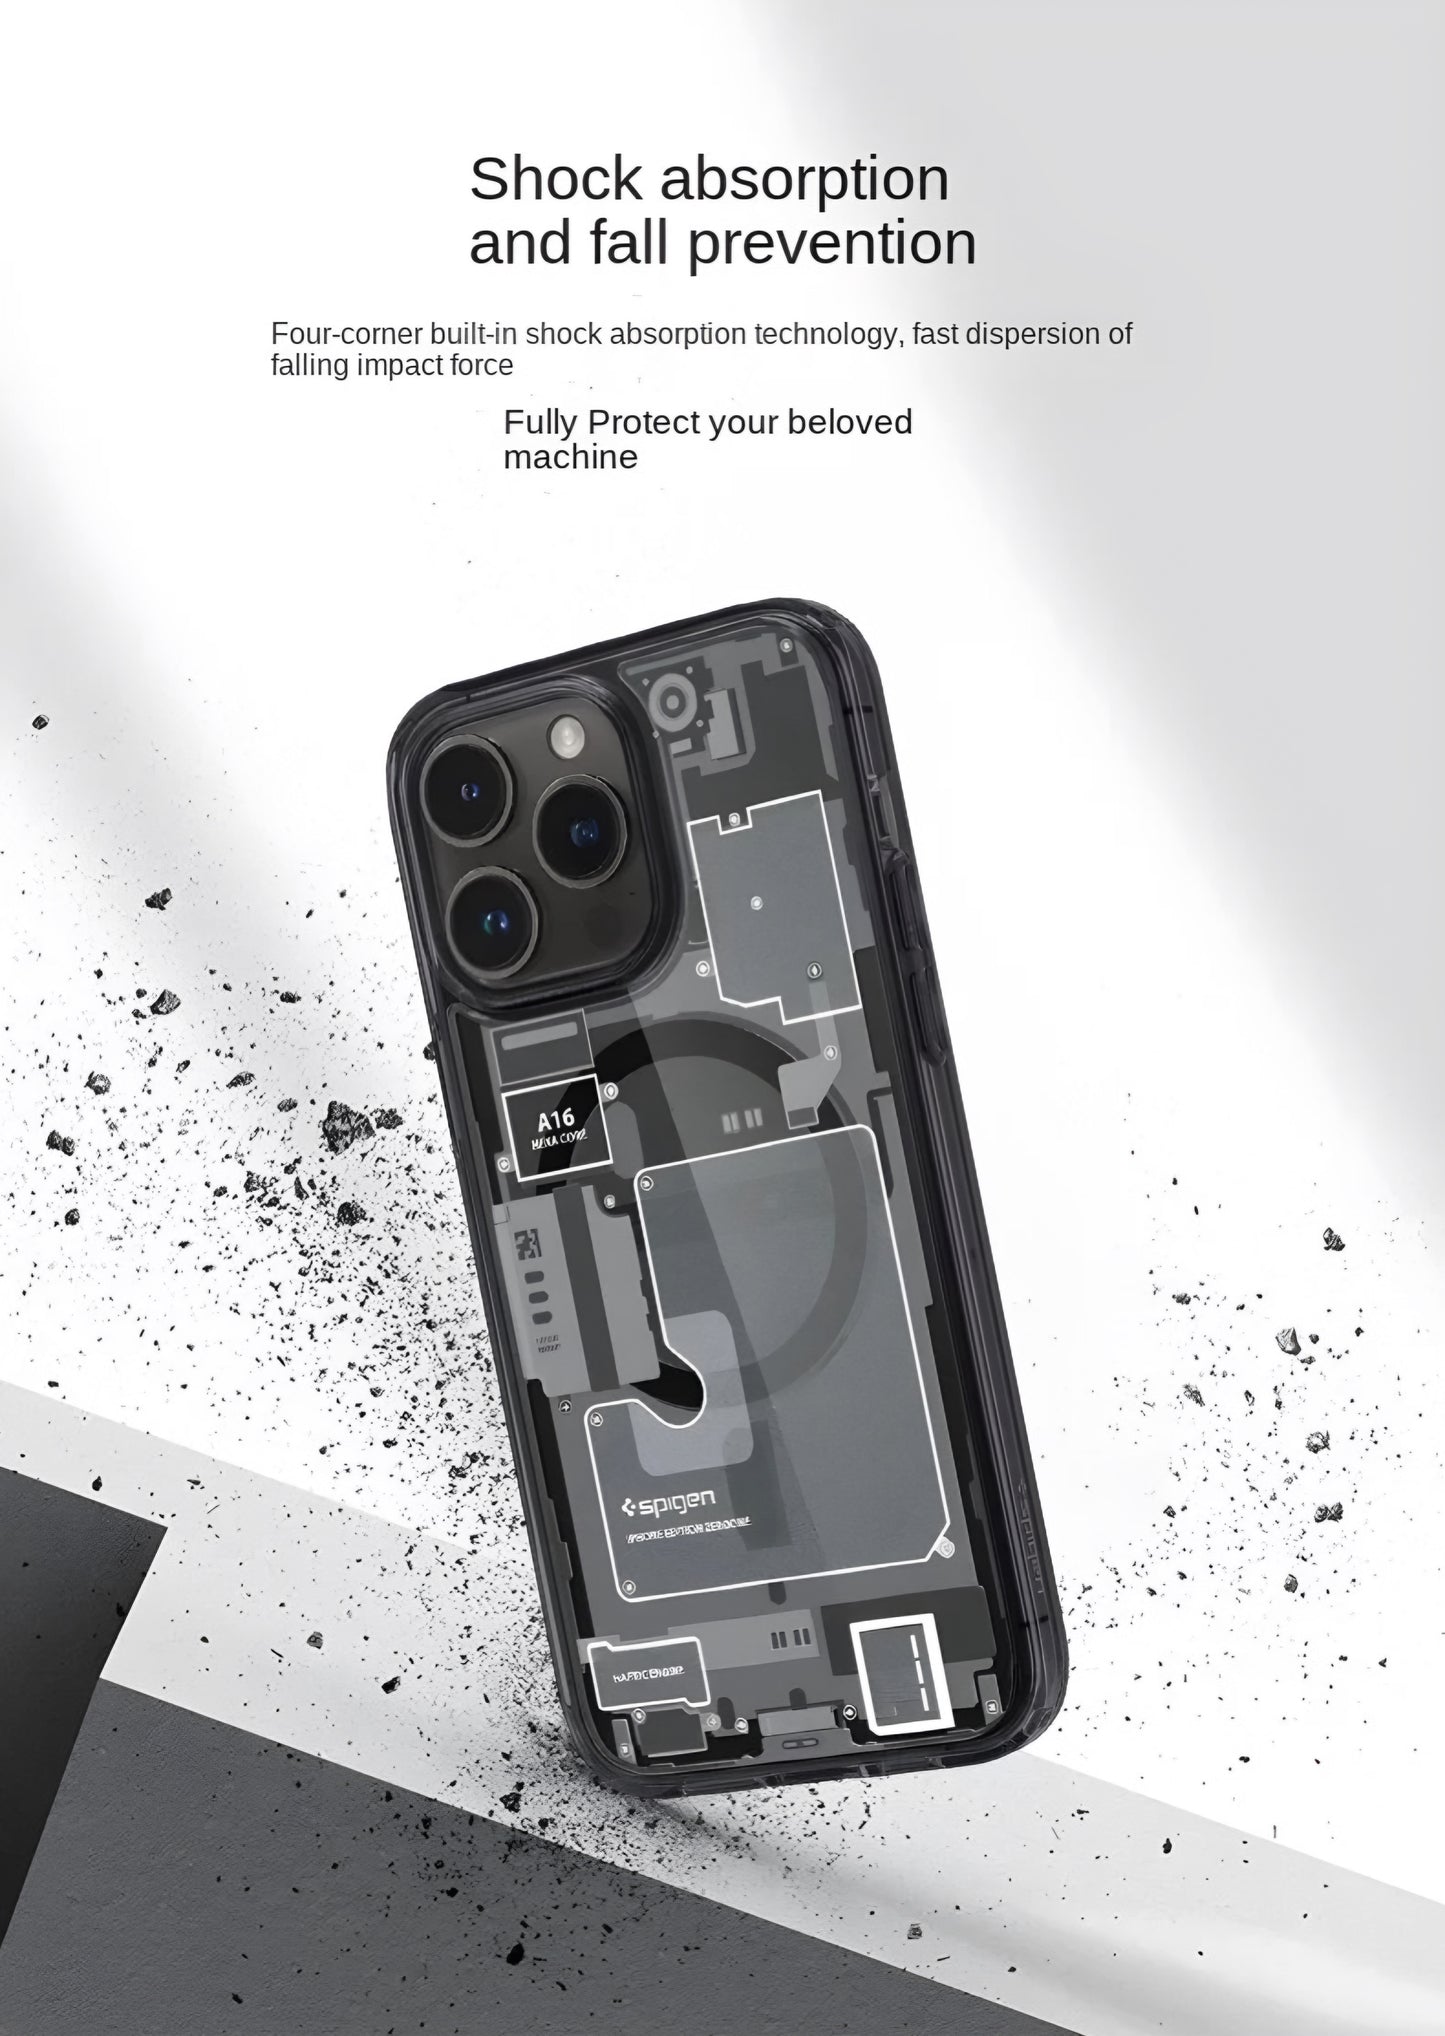 Spigen Magnetic Matte iPhone Case